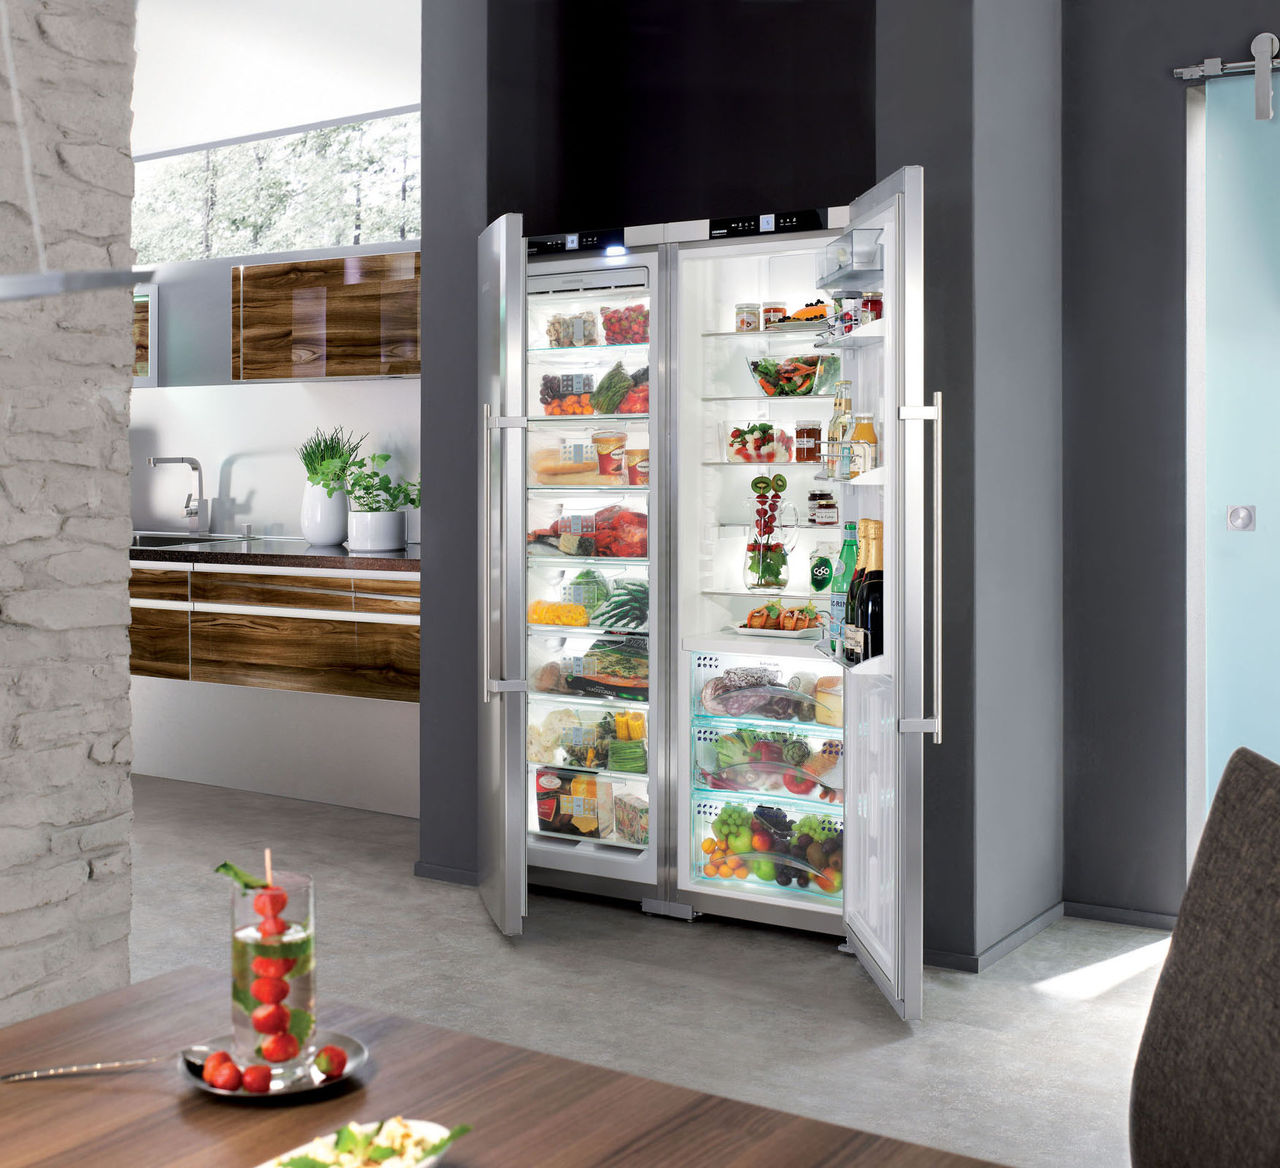 Microsoft installerar artificiell intelligens i kylskåp